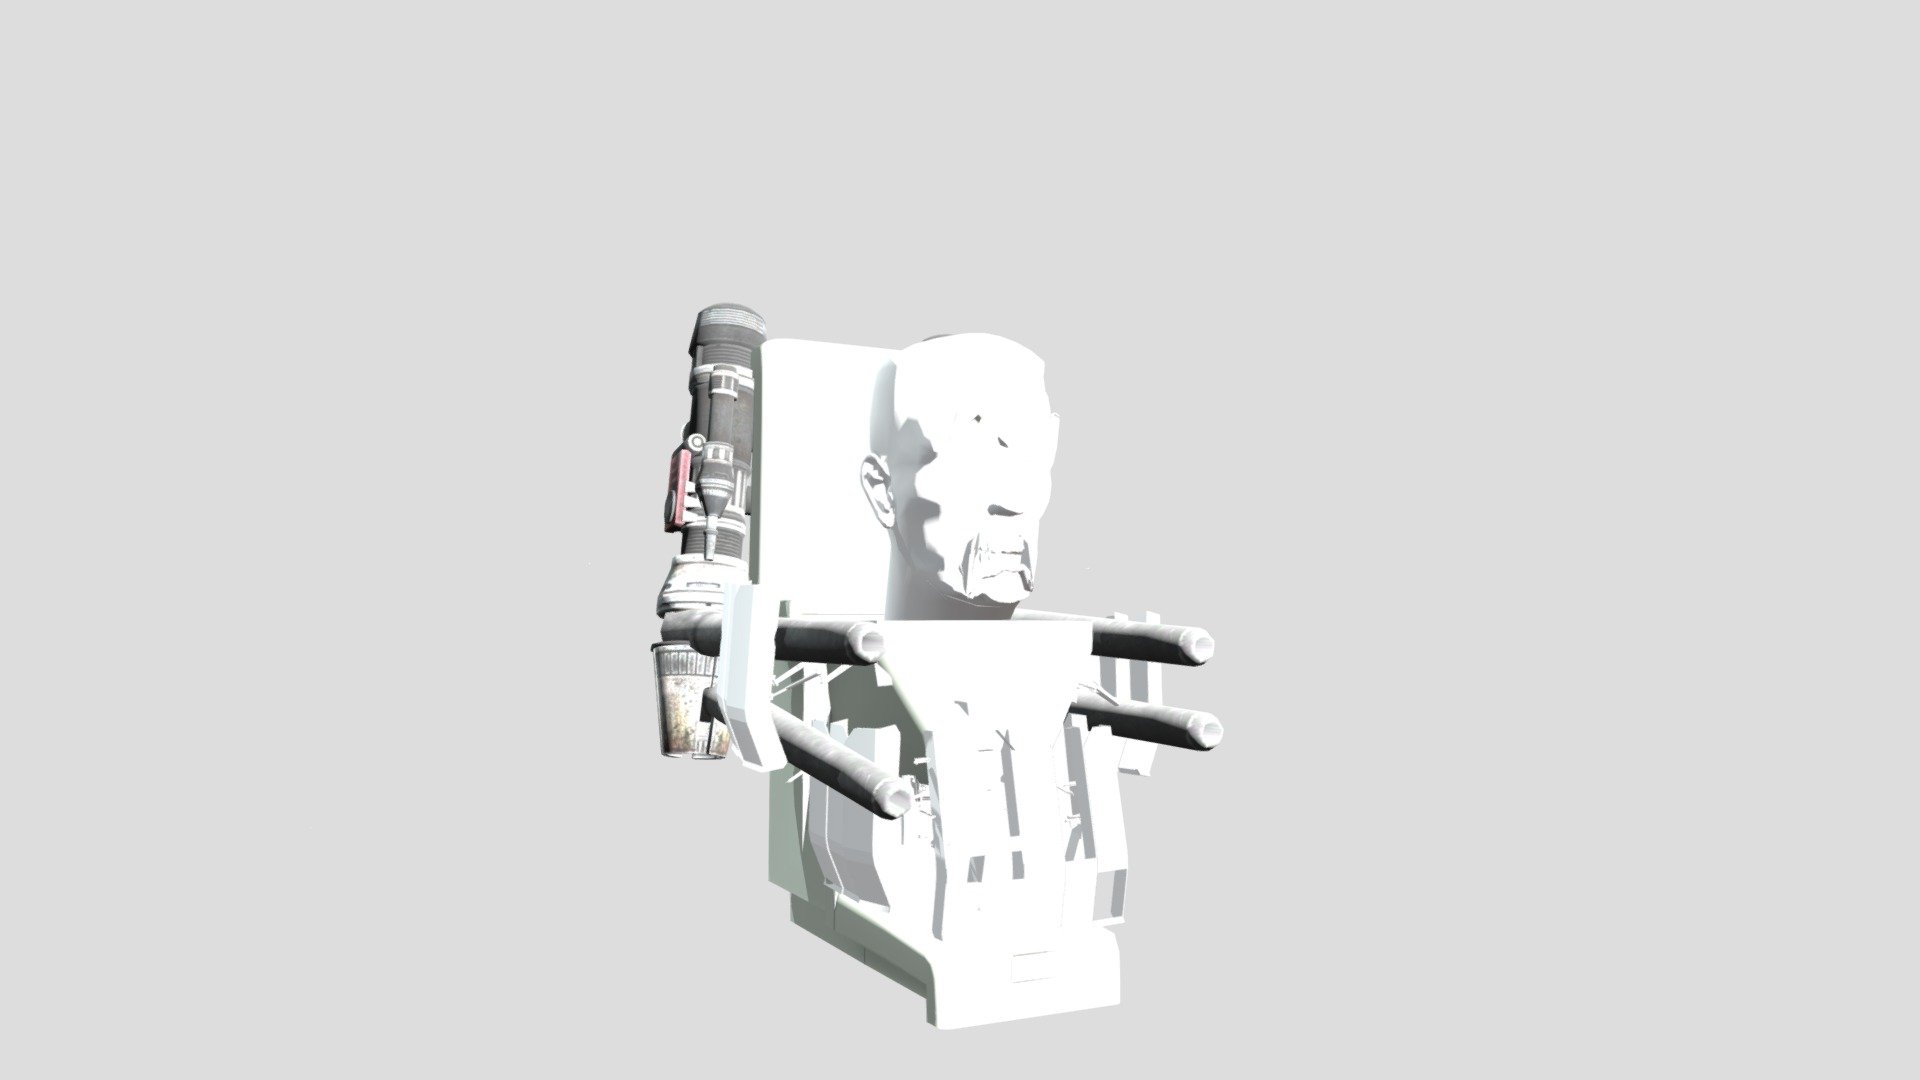 G-Man toilet prisma 3D by deaquinosiqueira on DeviantArt